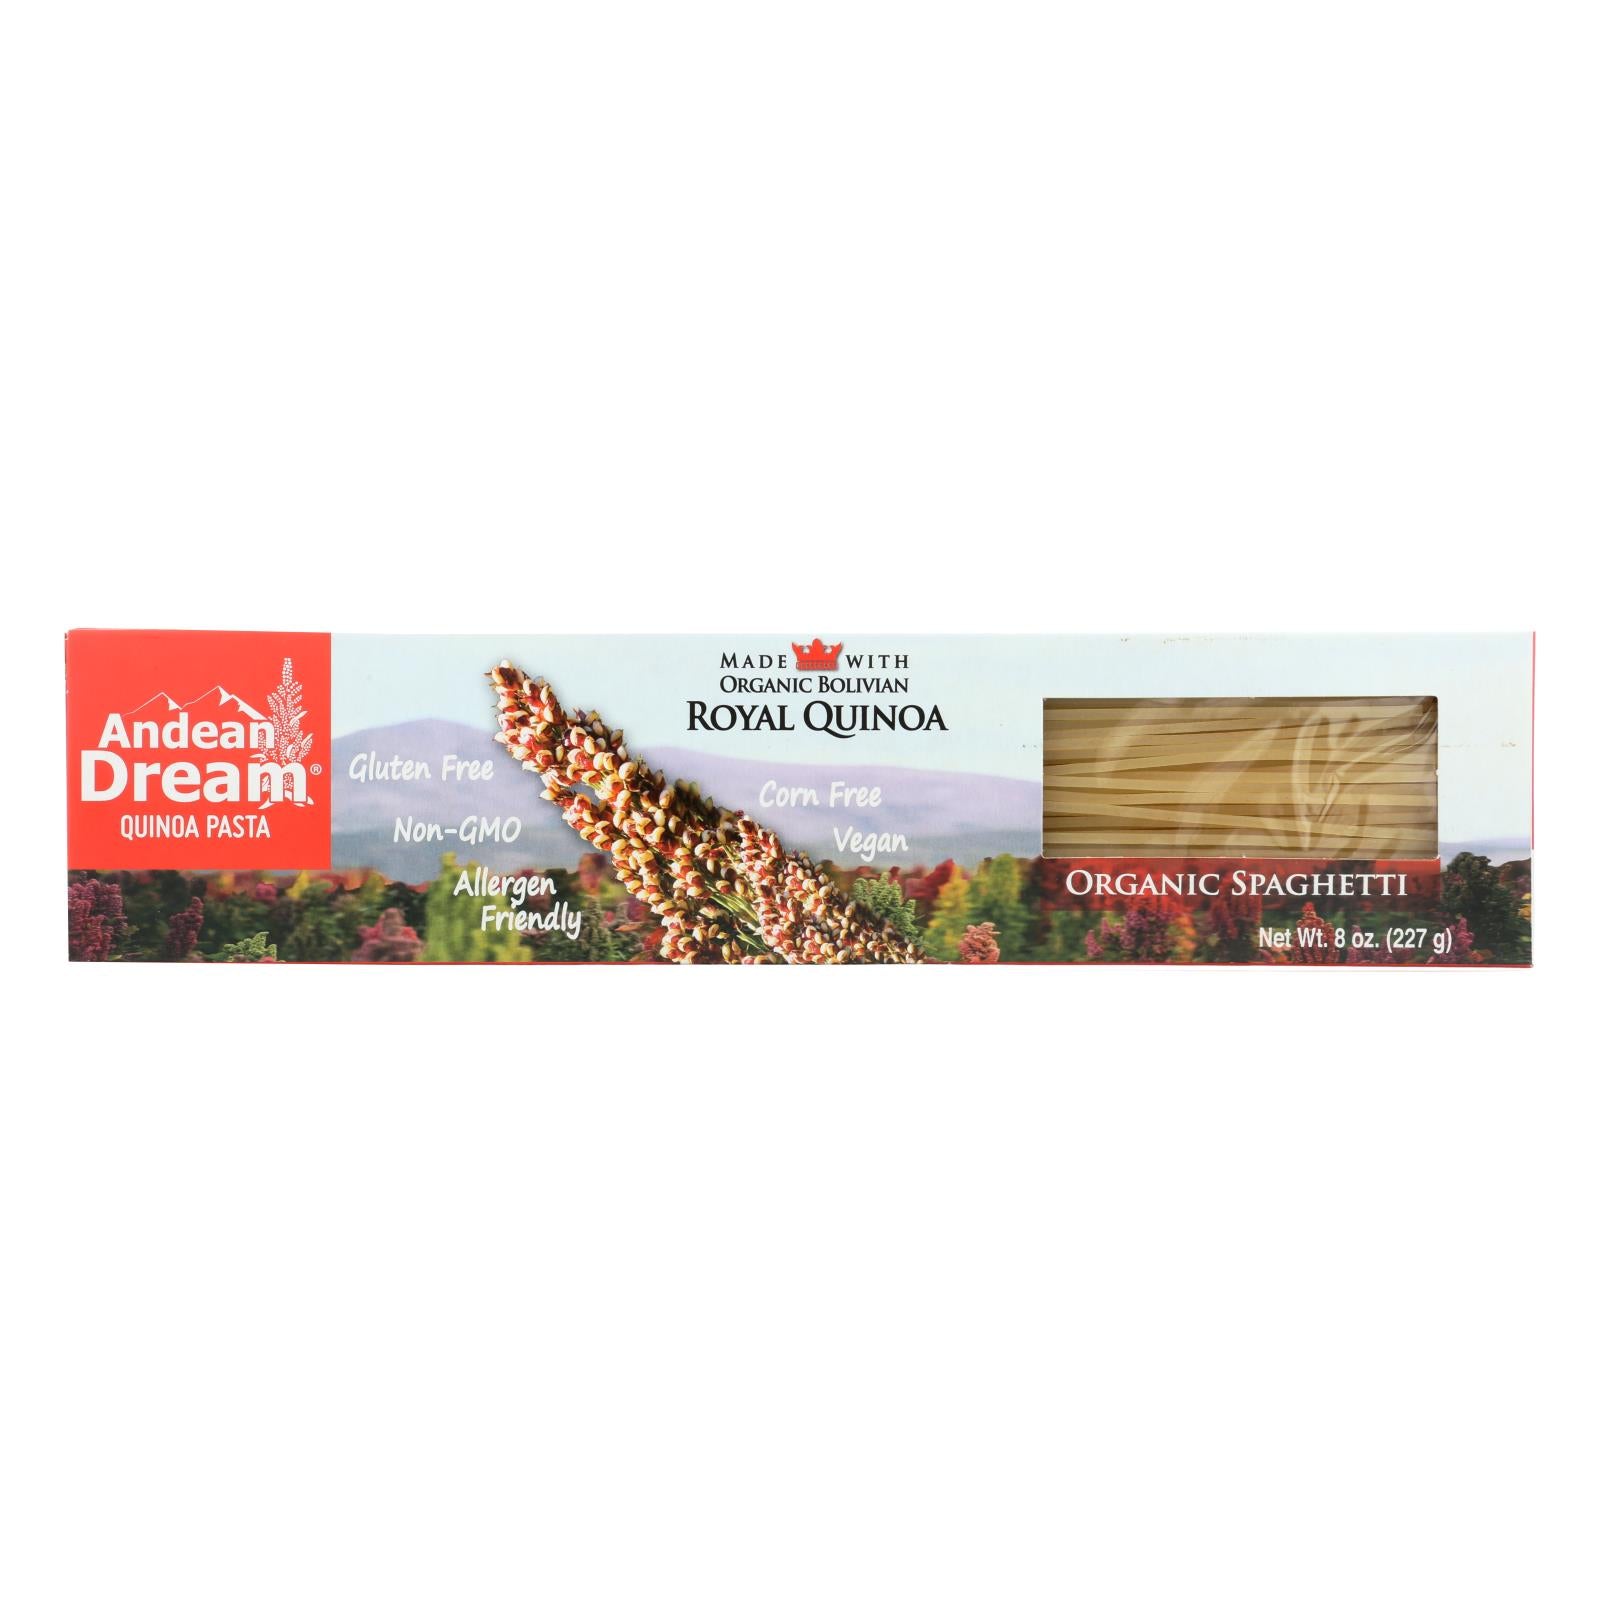 Andean Dream, Andean Dream Gluten Free Organic Spaghetti Quinoa Pasta - Case of 12 - 8 oz. (Pack of 12)